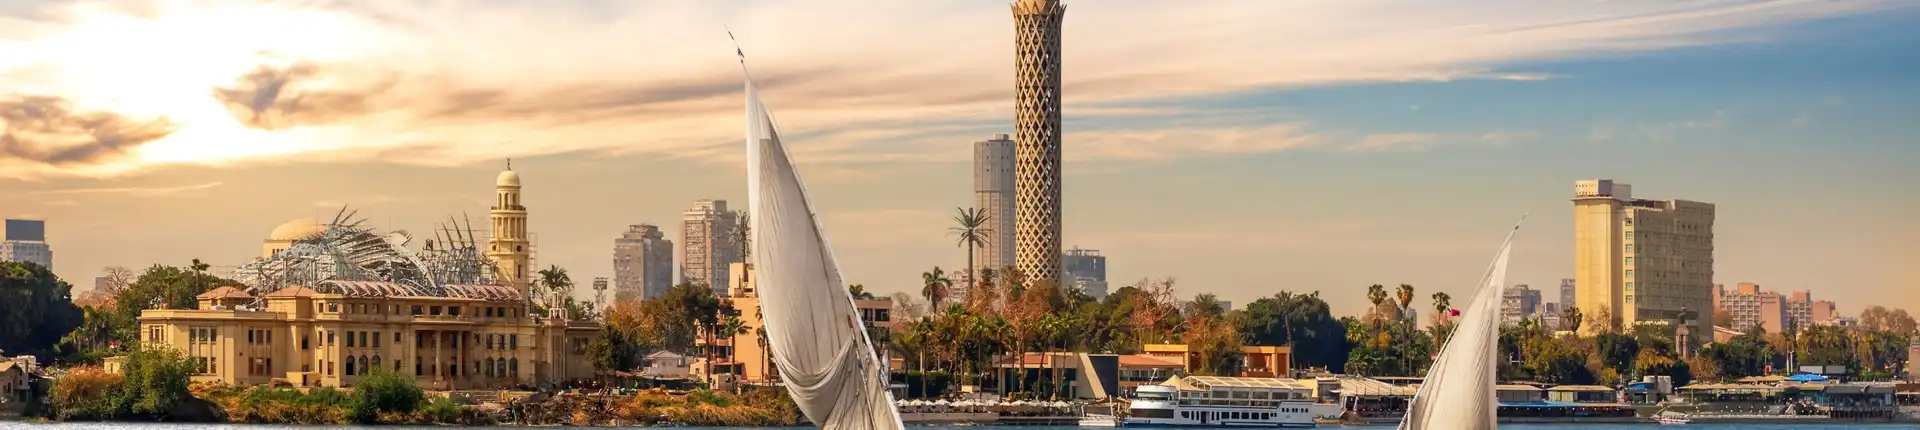 أماكن سياحية في القاهرة على النيل